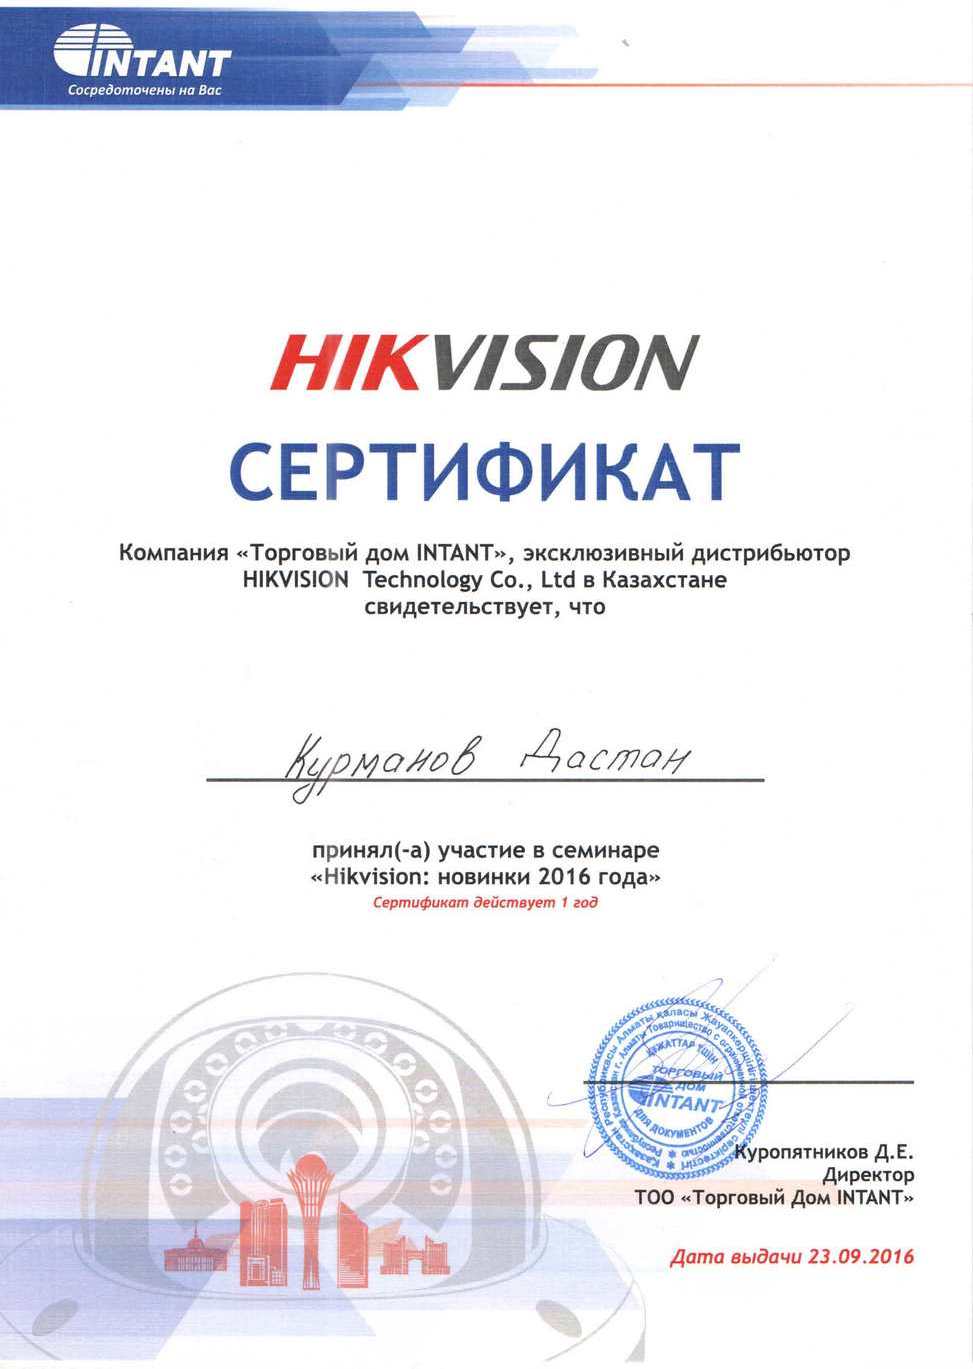 Сертификат компании Интант